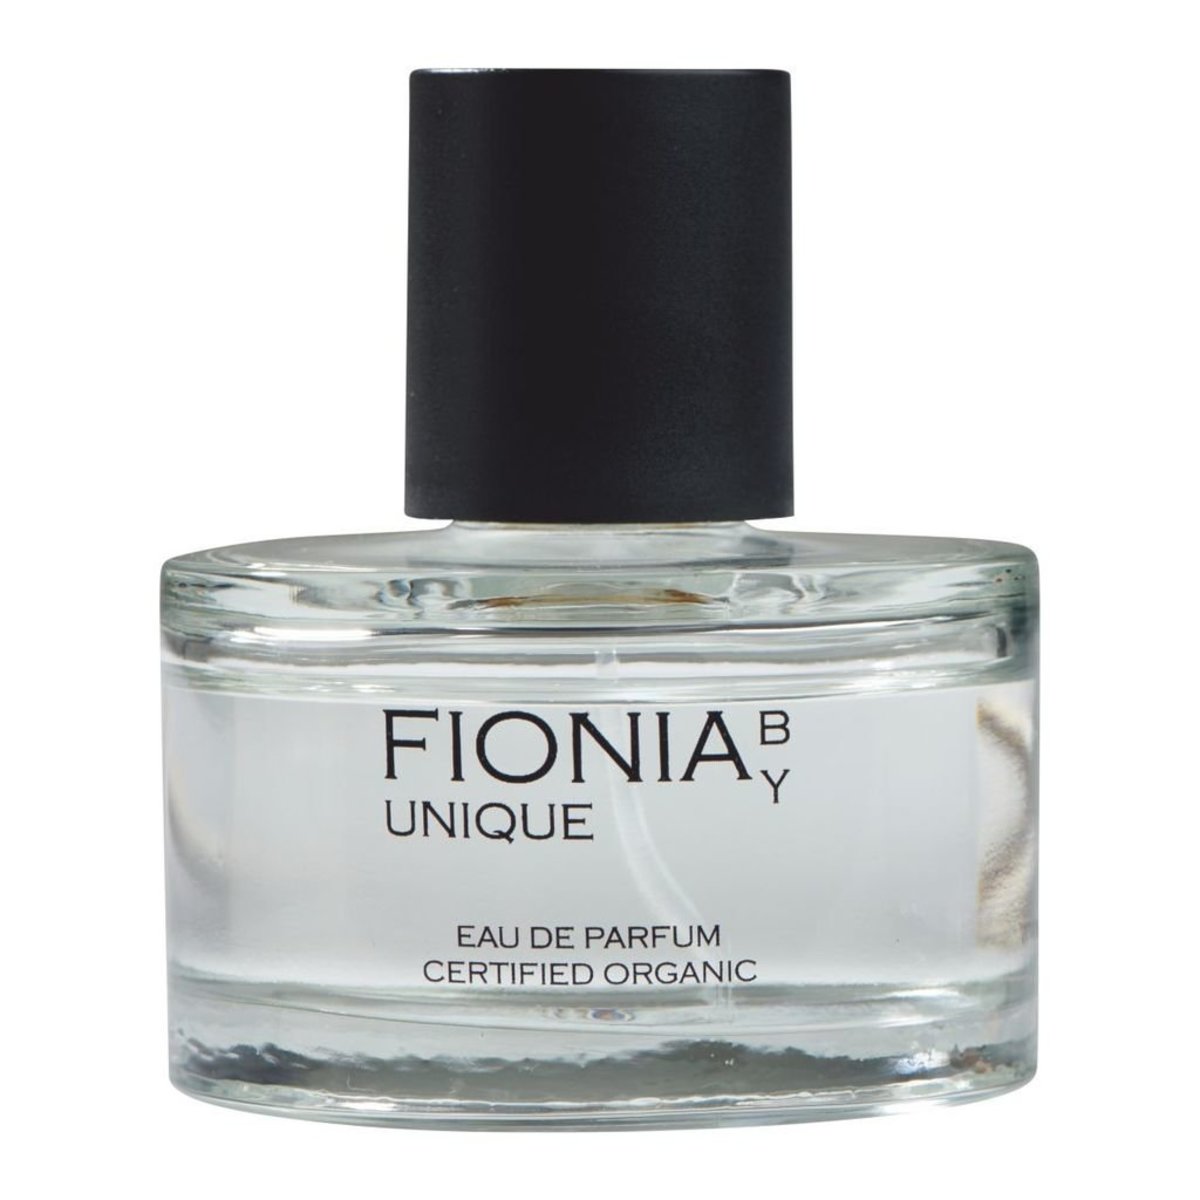 Fionia by Unique Eau de Parfum 50ml 